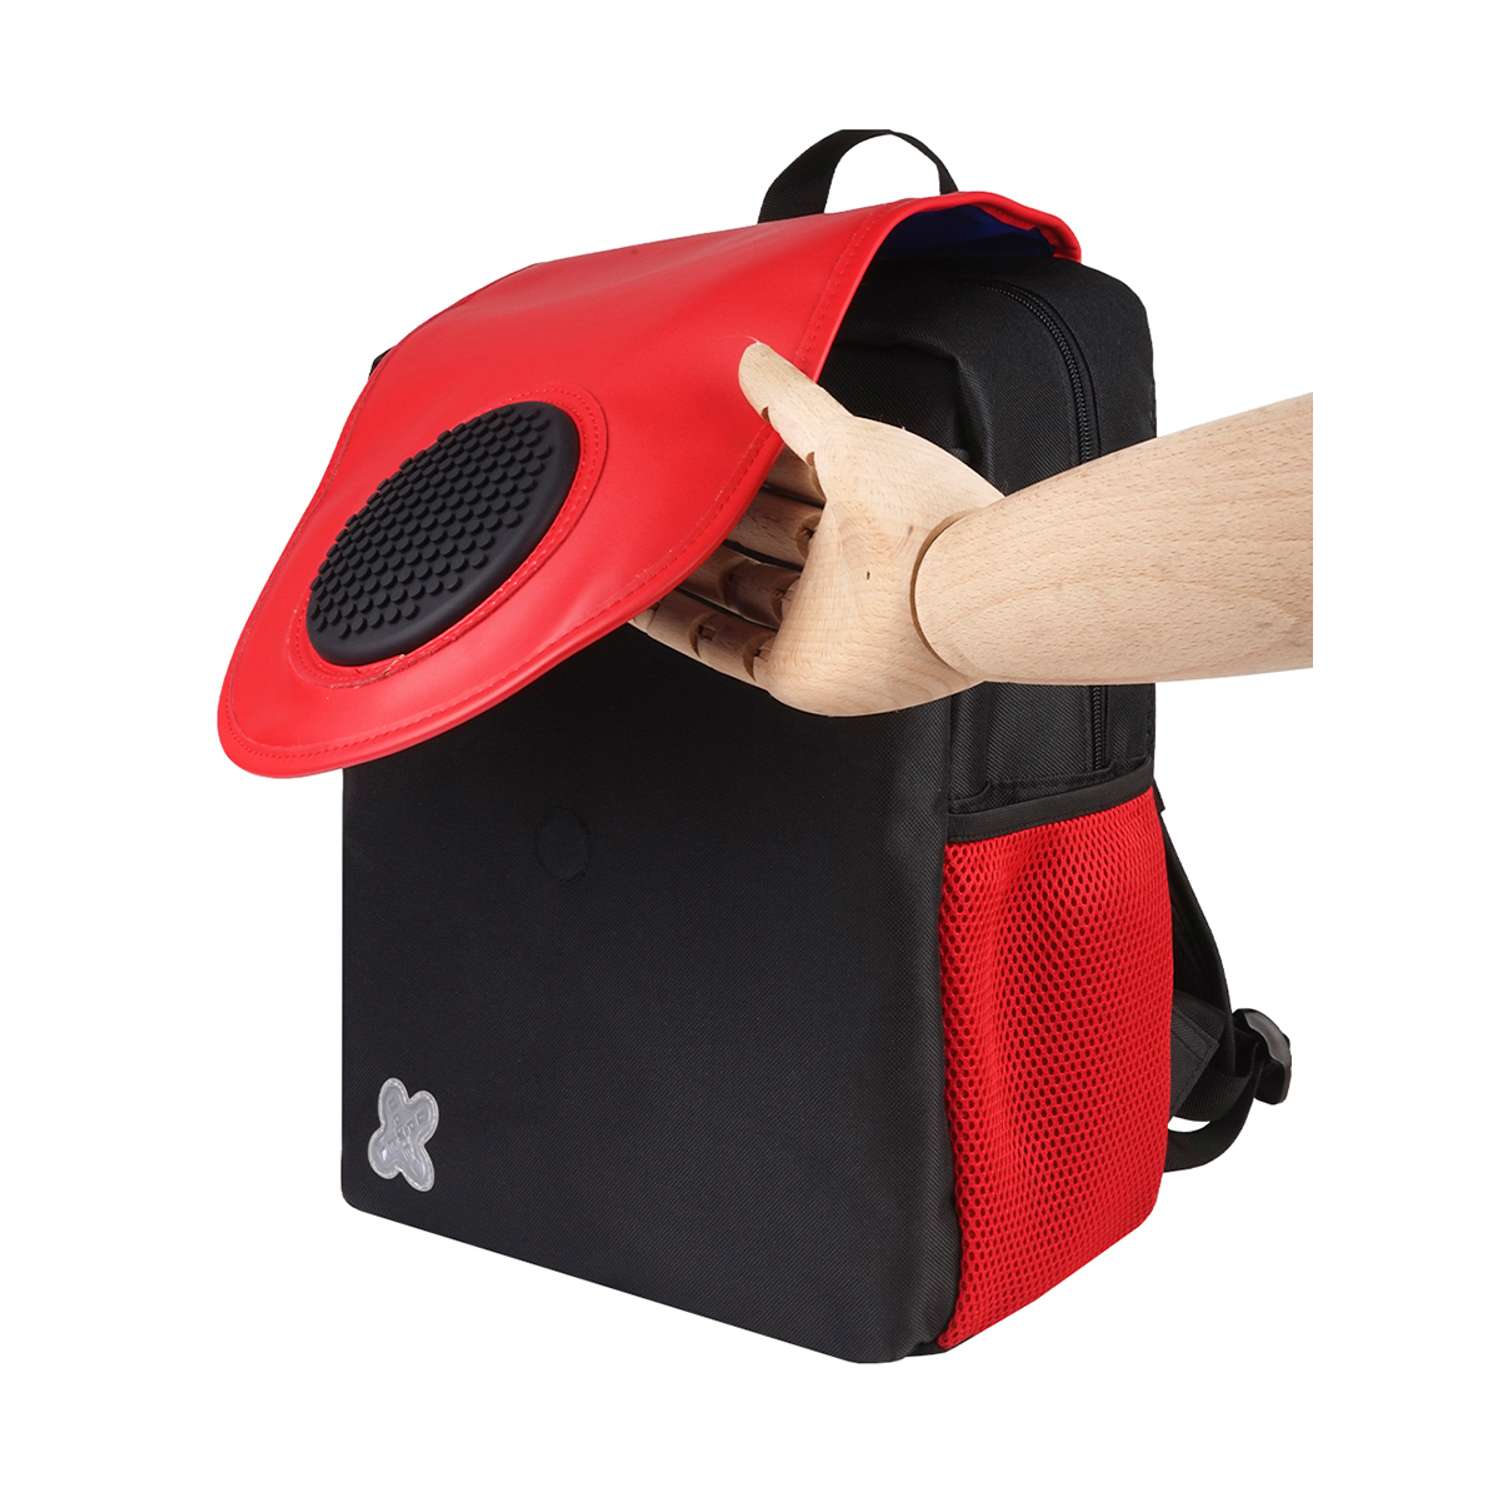 Рюкзак пиксельный Upixel futuristic Kids School Bag чёрно-красный облегченный - фото 9